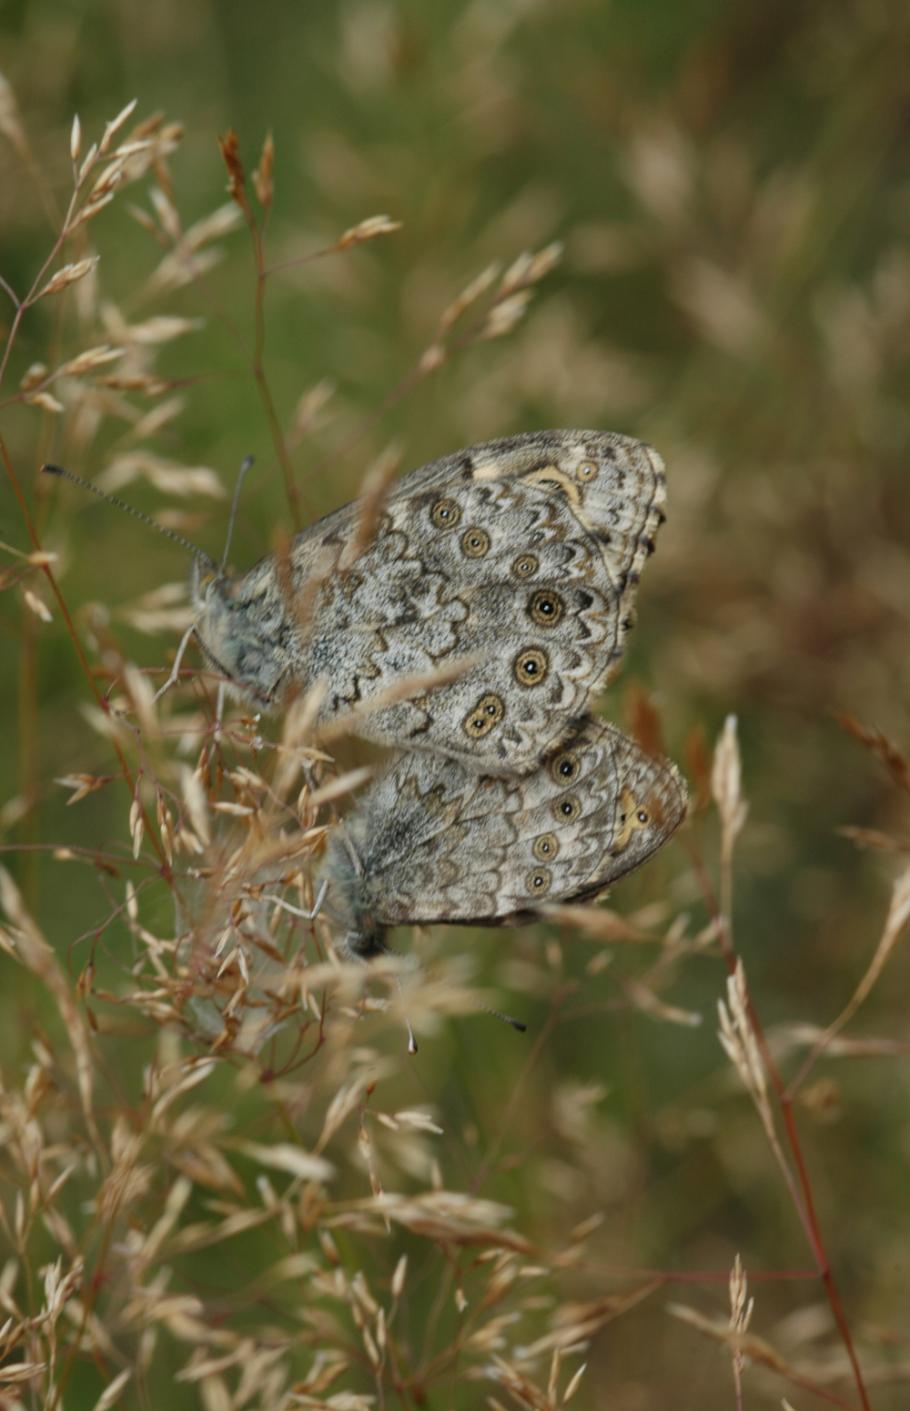 Woensdag 25 september 2013 houden we een Mistery butterfly-avond en er kunnen digitale vlinder- en libellenfoto s ter determinatie worden aangeboden.